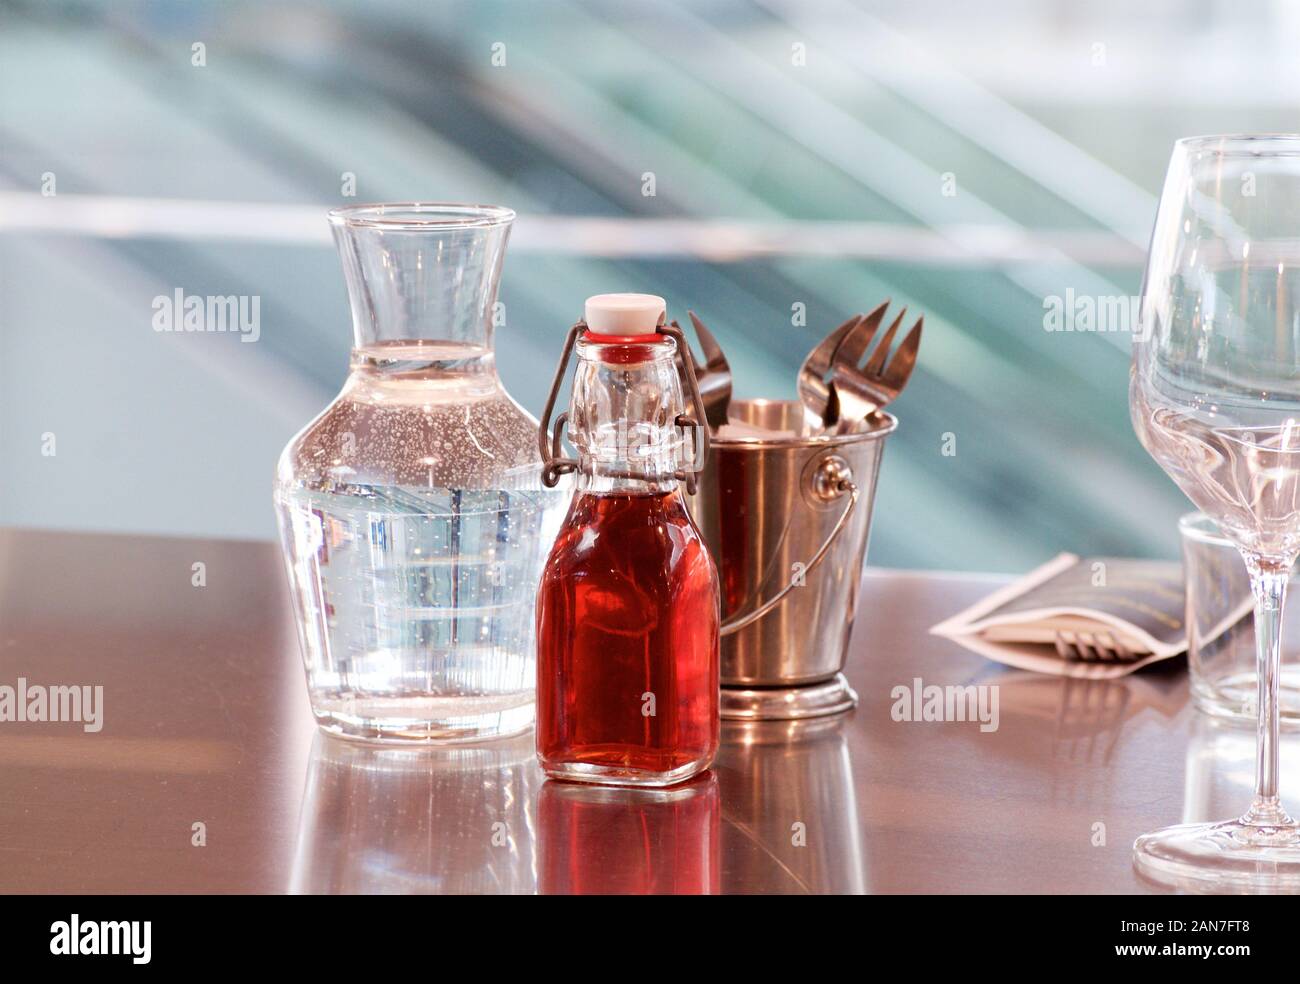 Un decantador de agua, una botella de vinagre de uva roja y un cucharón de bronce con vajilla en la lisa superficie de espejo de una tabla en un mercado de pescado en Francia Foto de stock